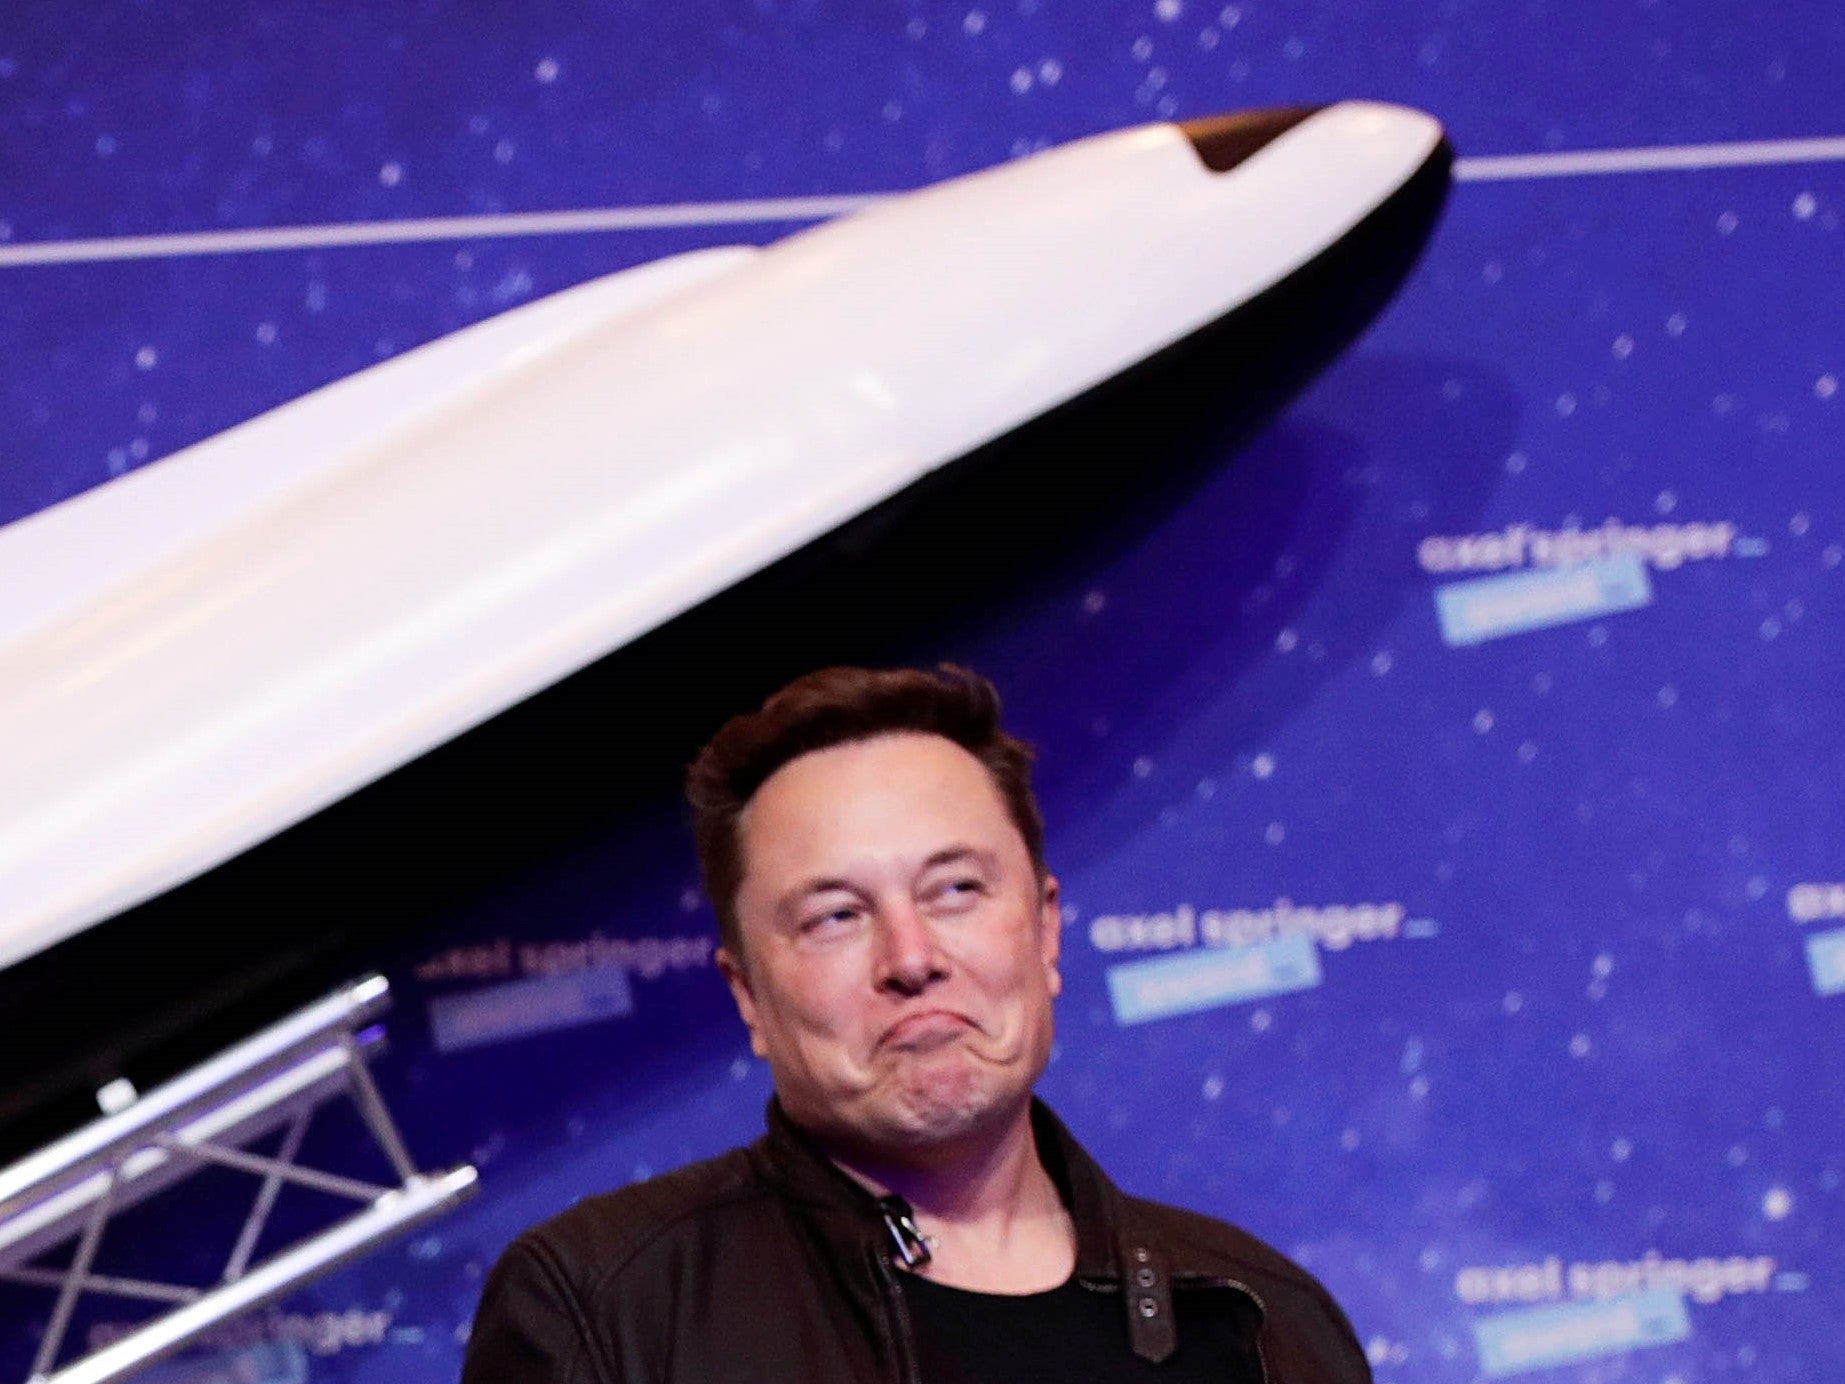 El propietario de SpaceX y CEO de Tesla, Elon Musk, llega a la alfombra roja para el Premio Axel Springer el 1 de diciembre de 2020 en Berlín, Alemania.